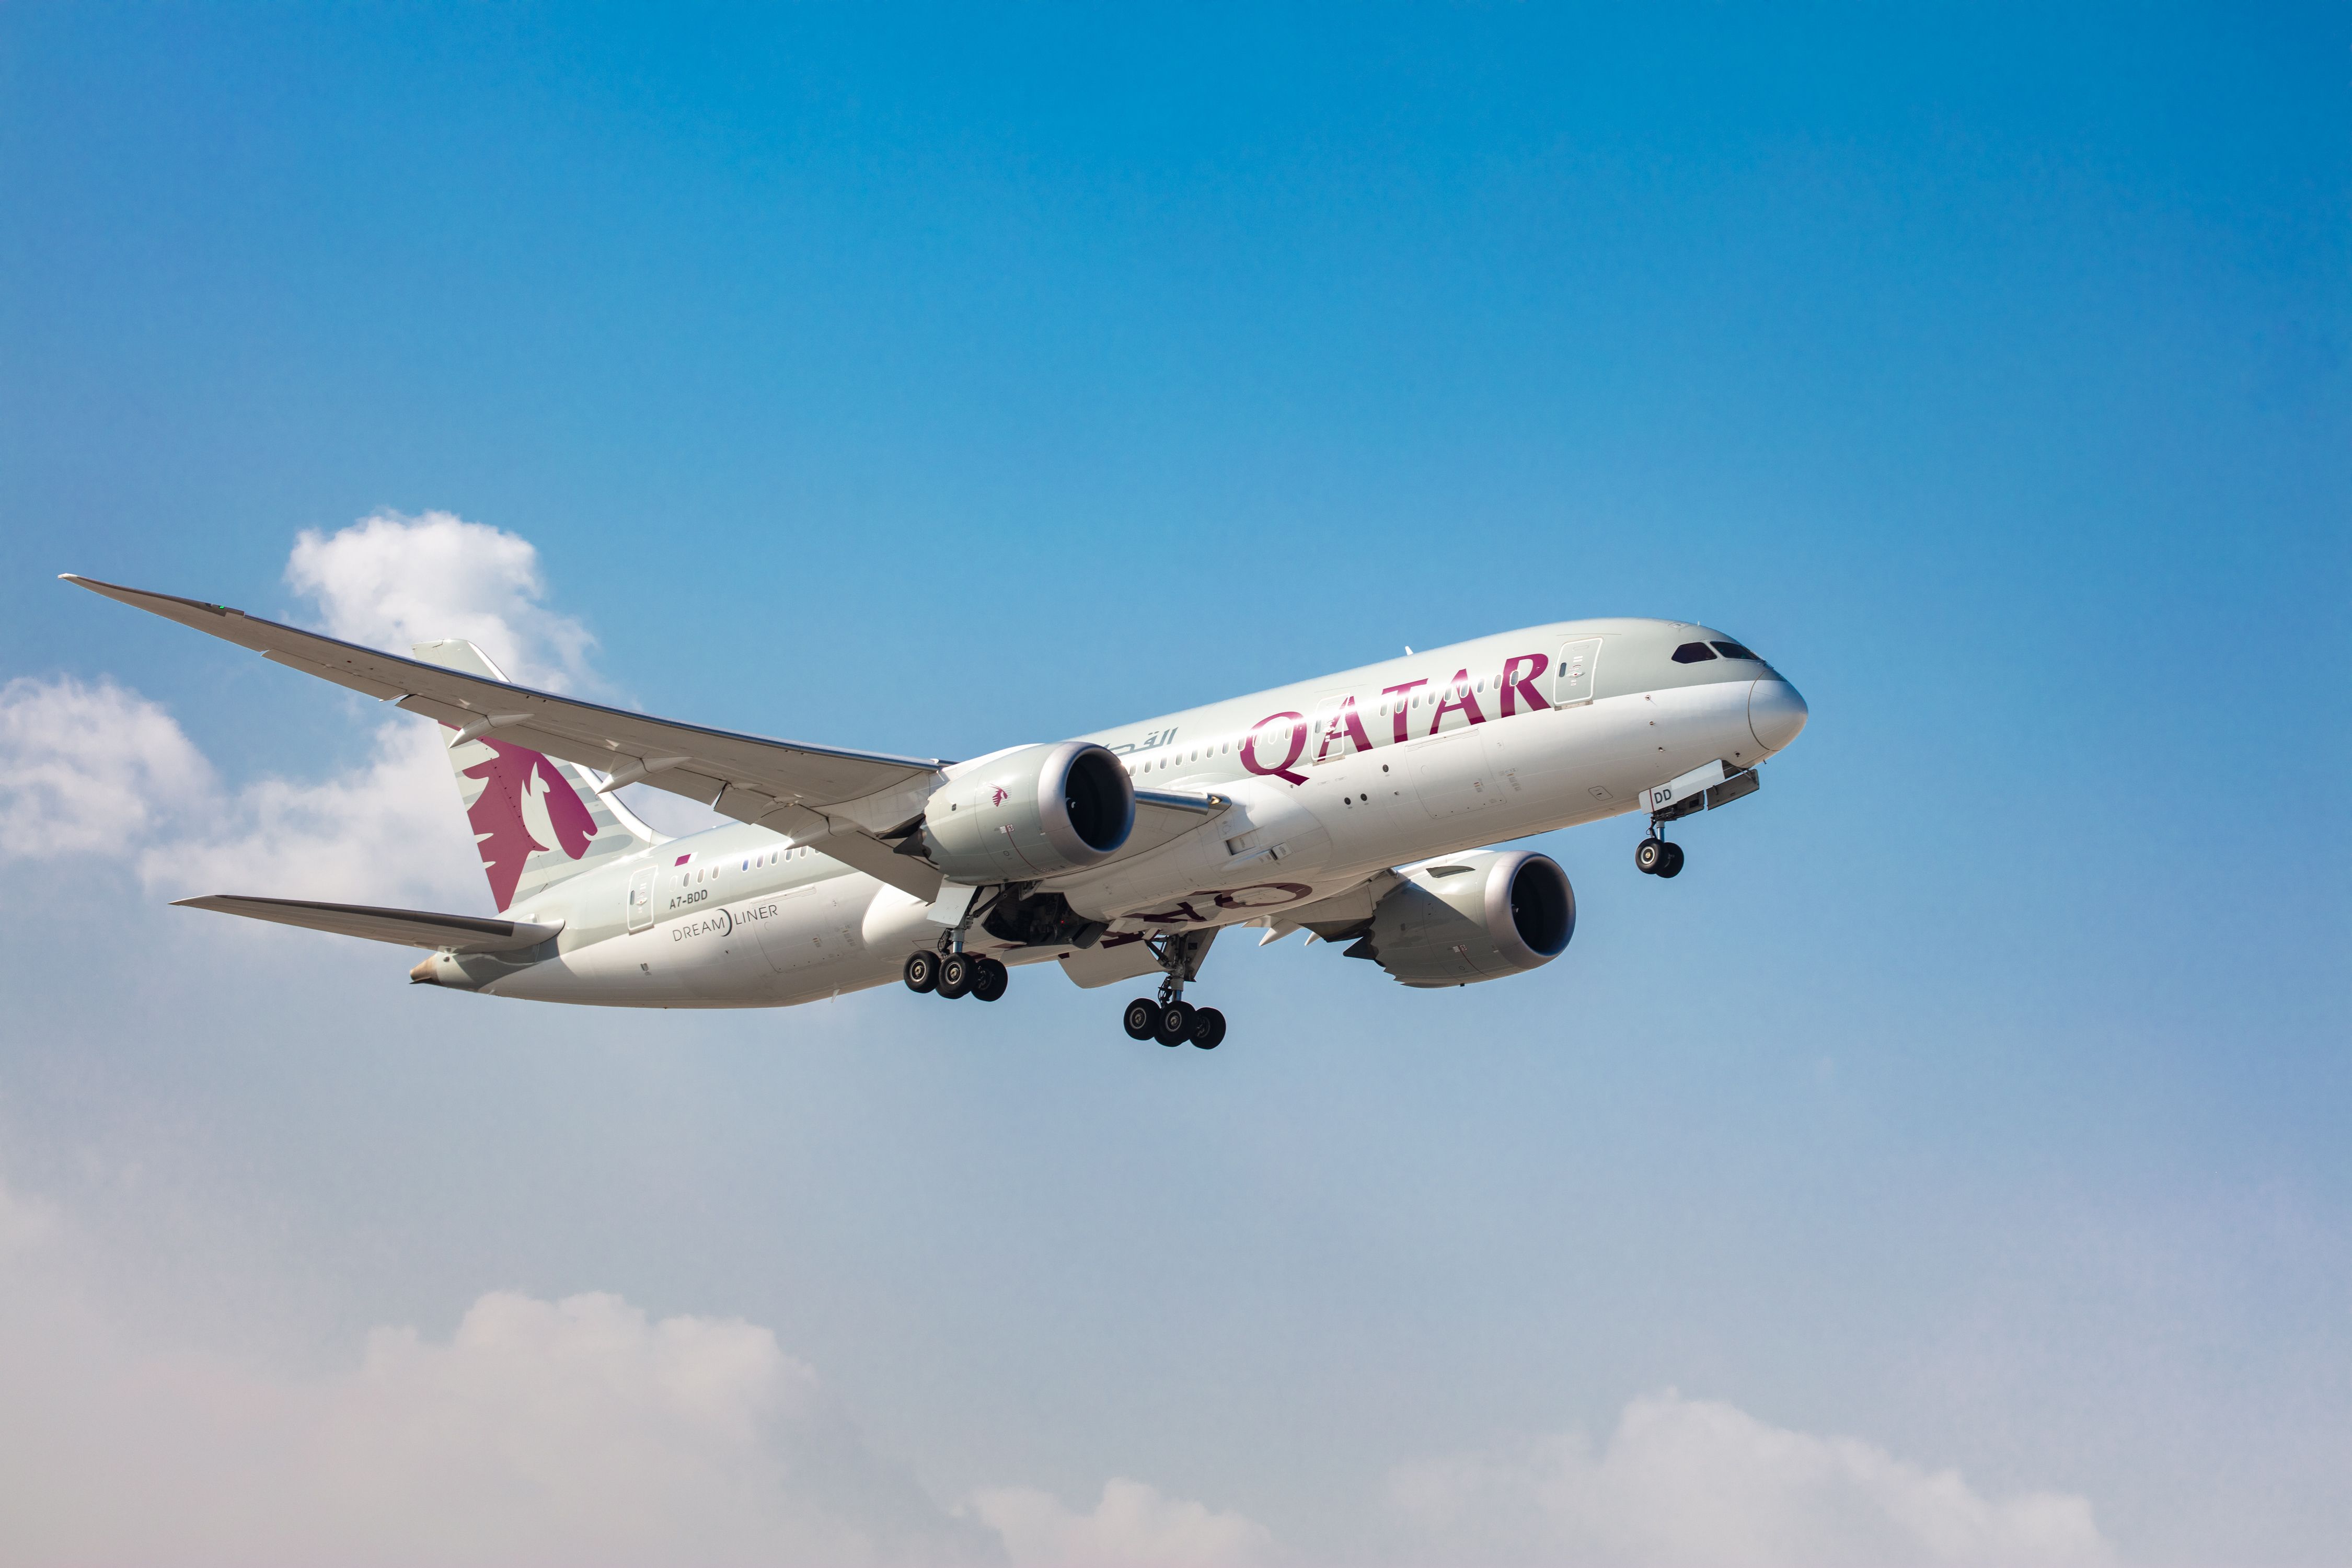 Qatar Airways  Boeing 787 Dreamliner on Approach to land